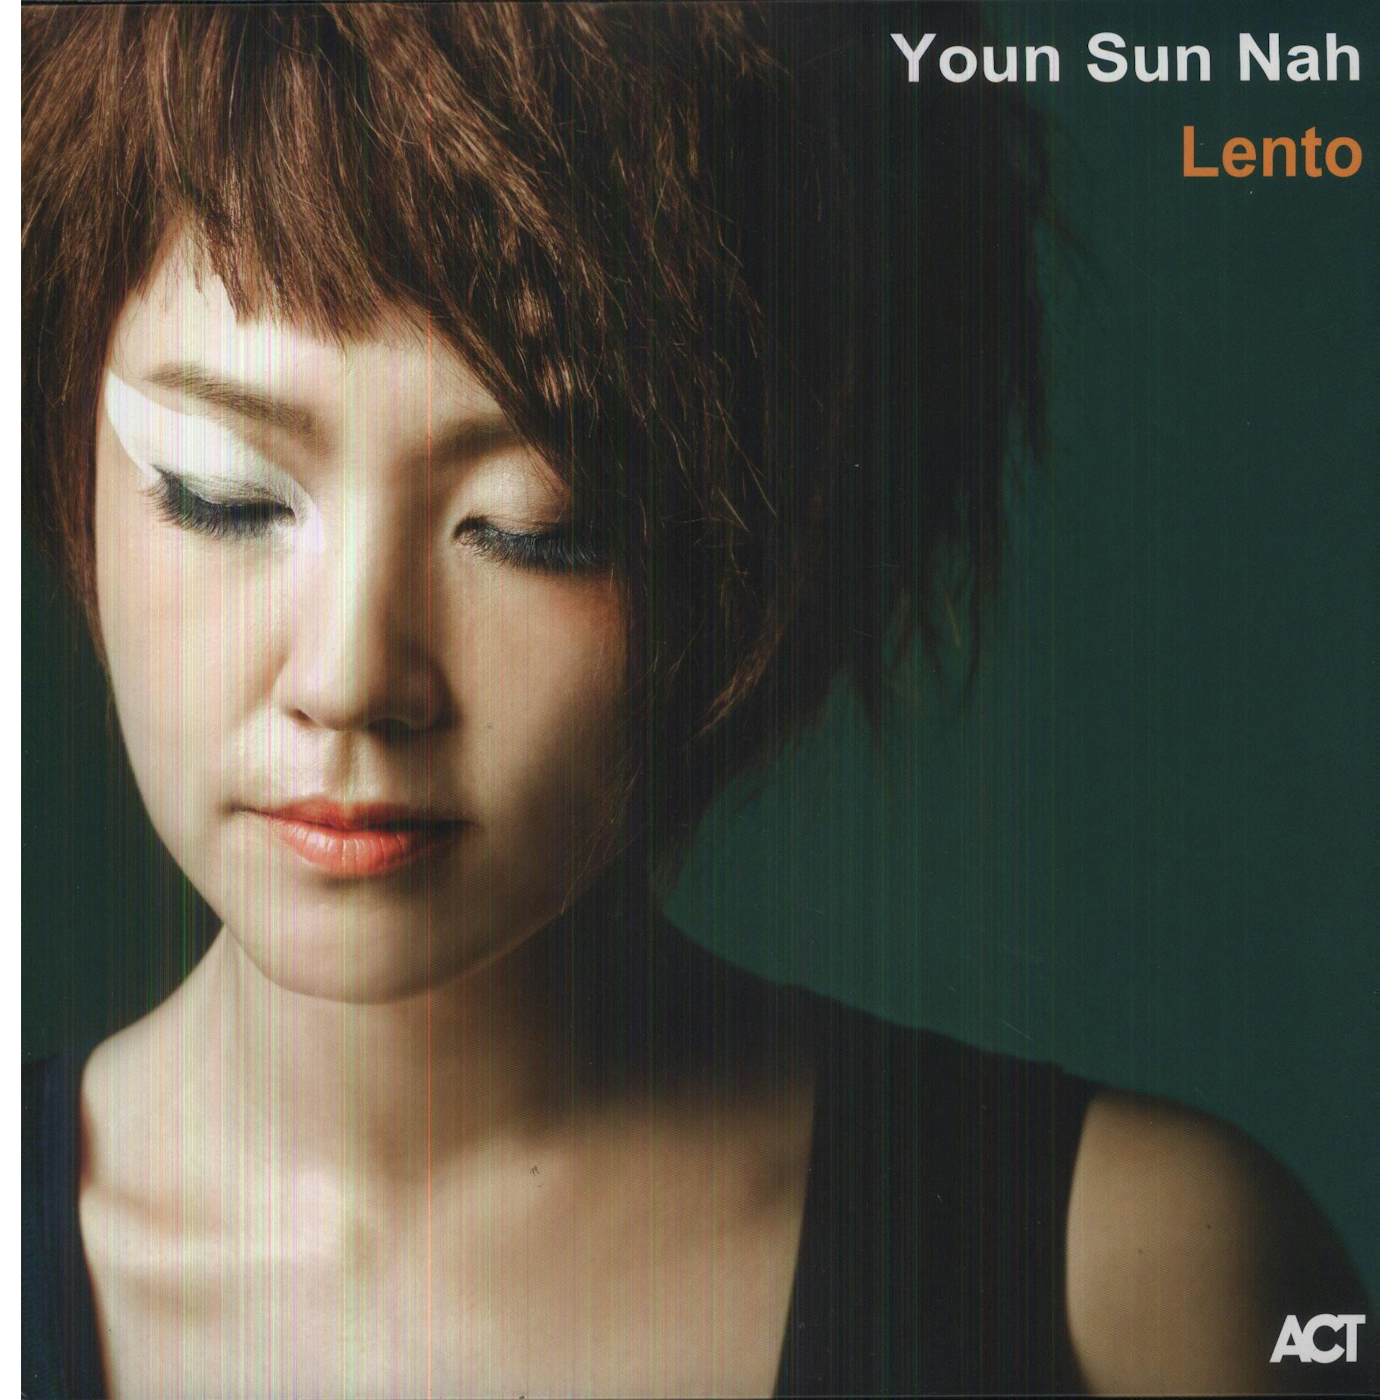 Youn Sun Nah Lento Vinyl Record